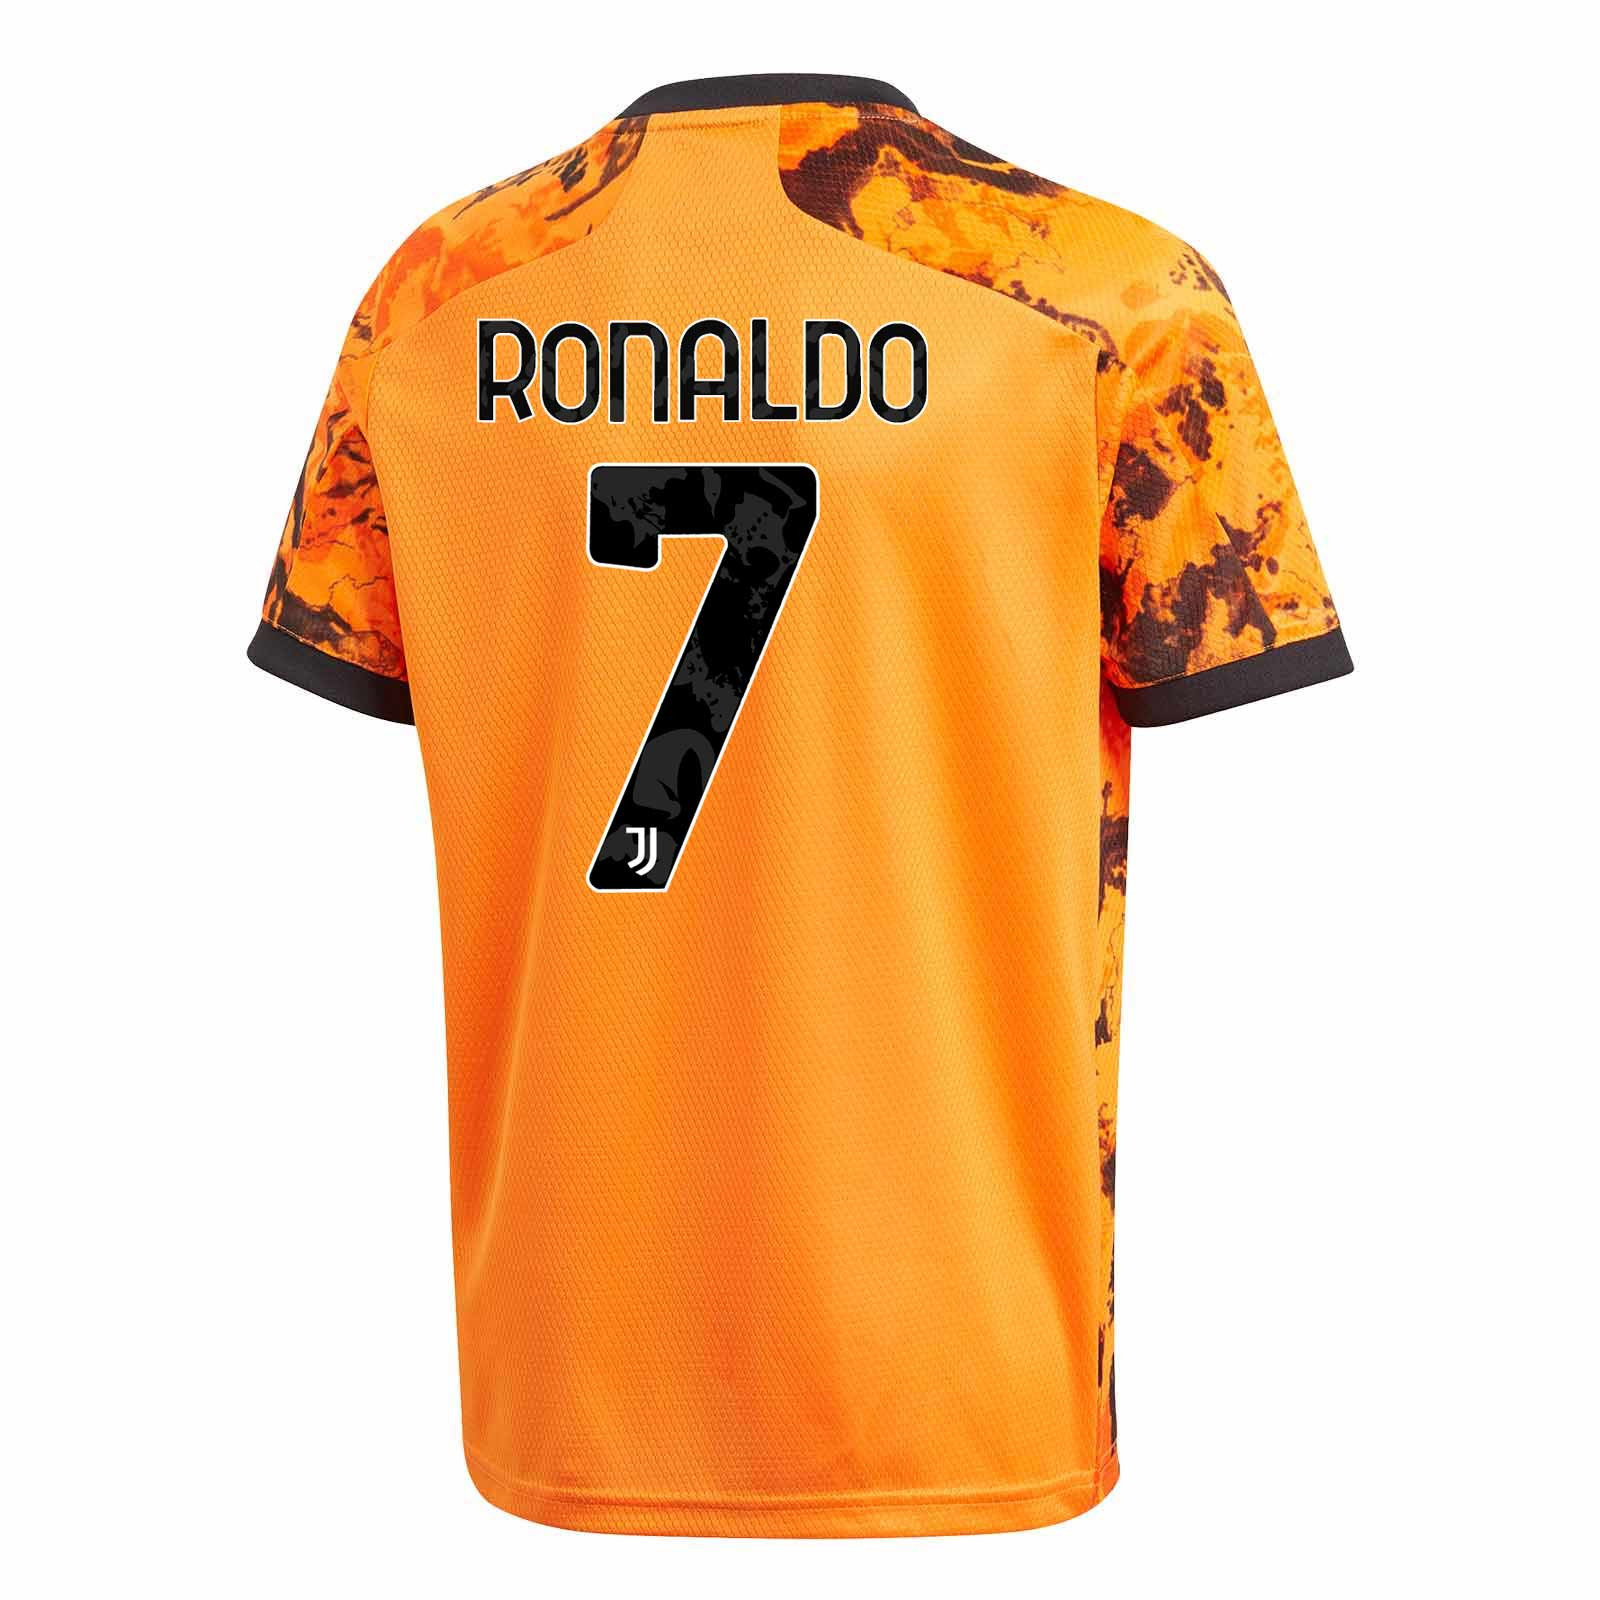 Camiseta adidas Ronaldo 3a Juventus niño 2020 2021